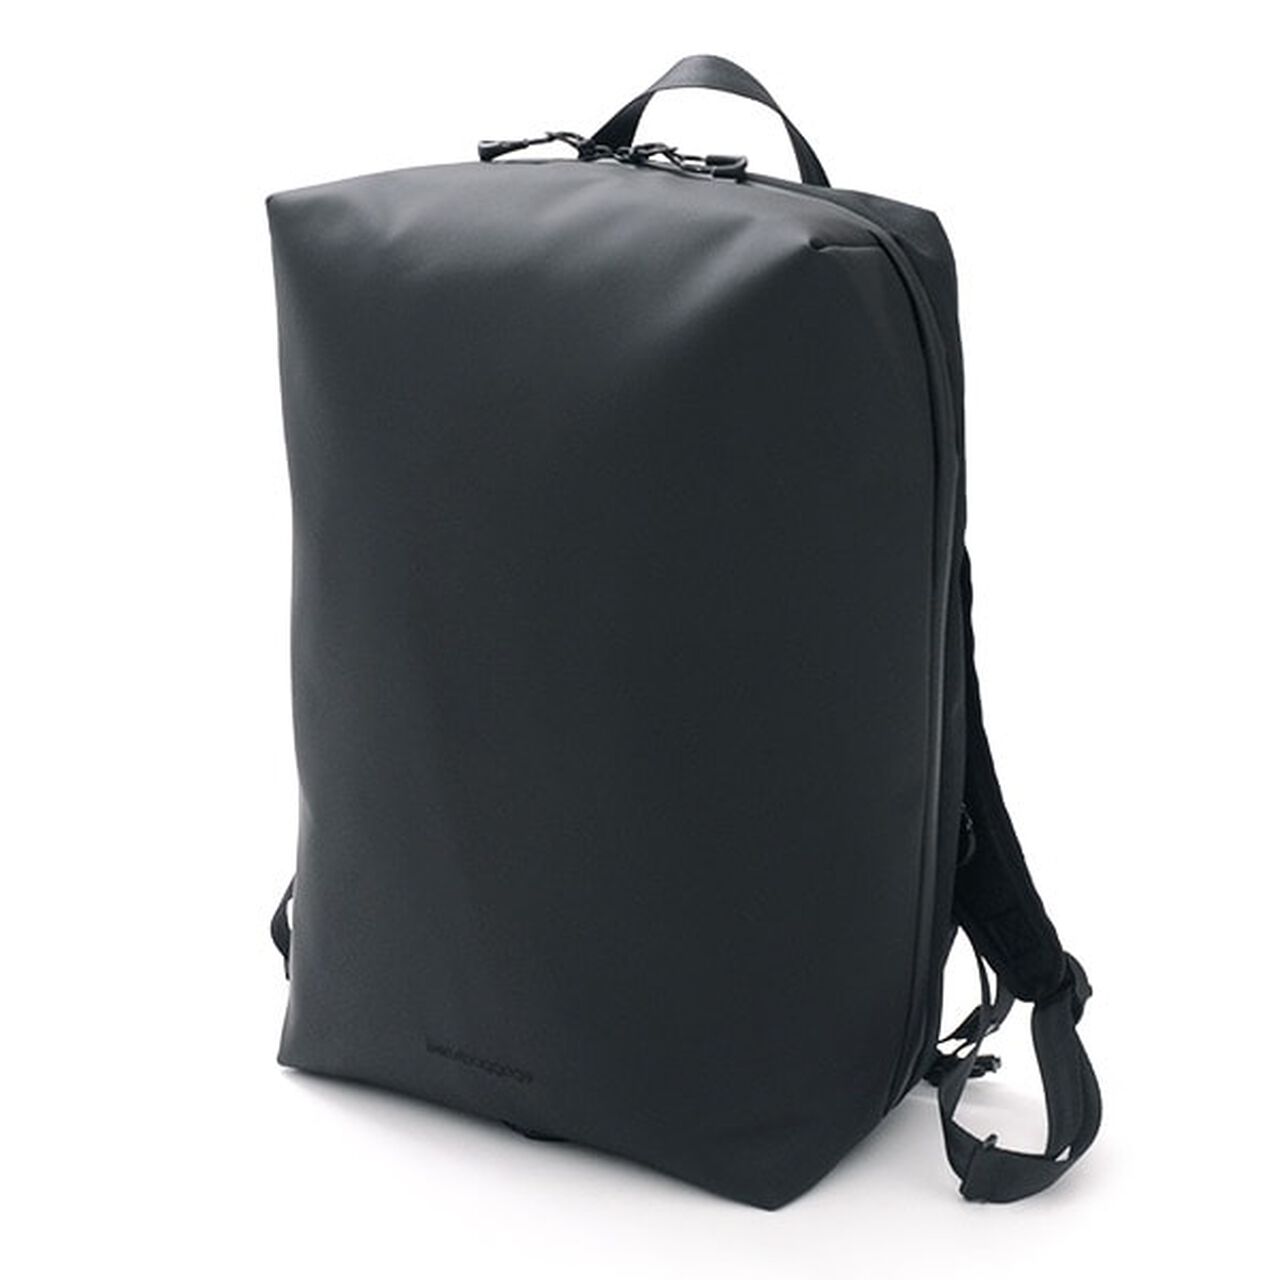 Urban Explorer 20 Backpack,Black, large image number 0